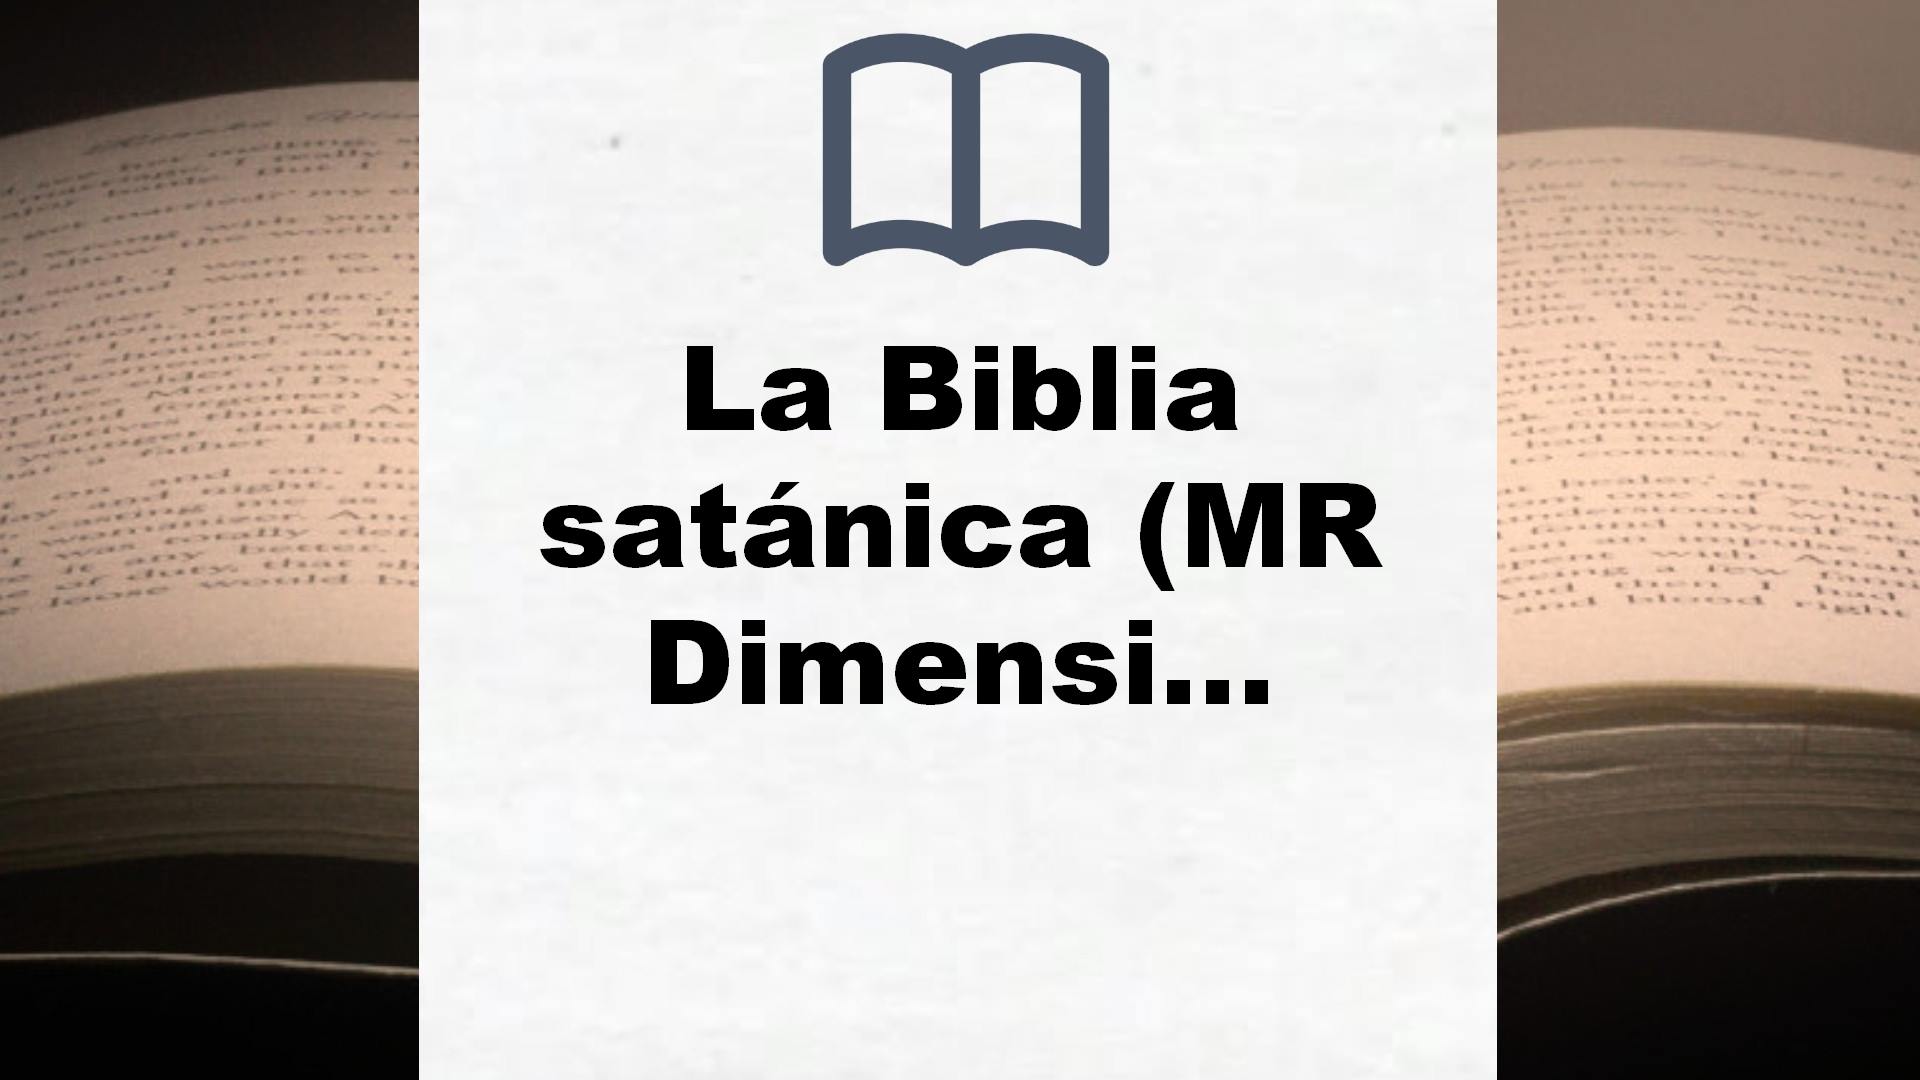 La Biblia satánica (MR Dimensiones) – Reseña del libro